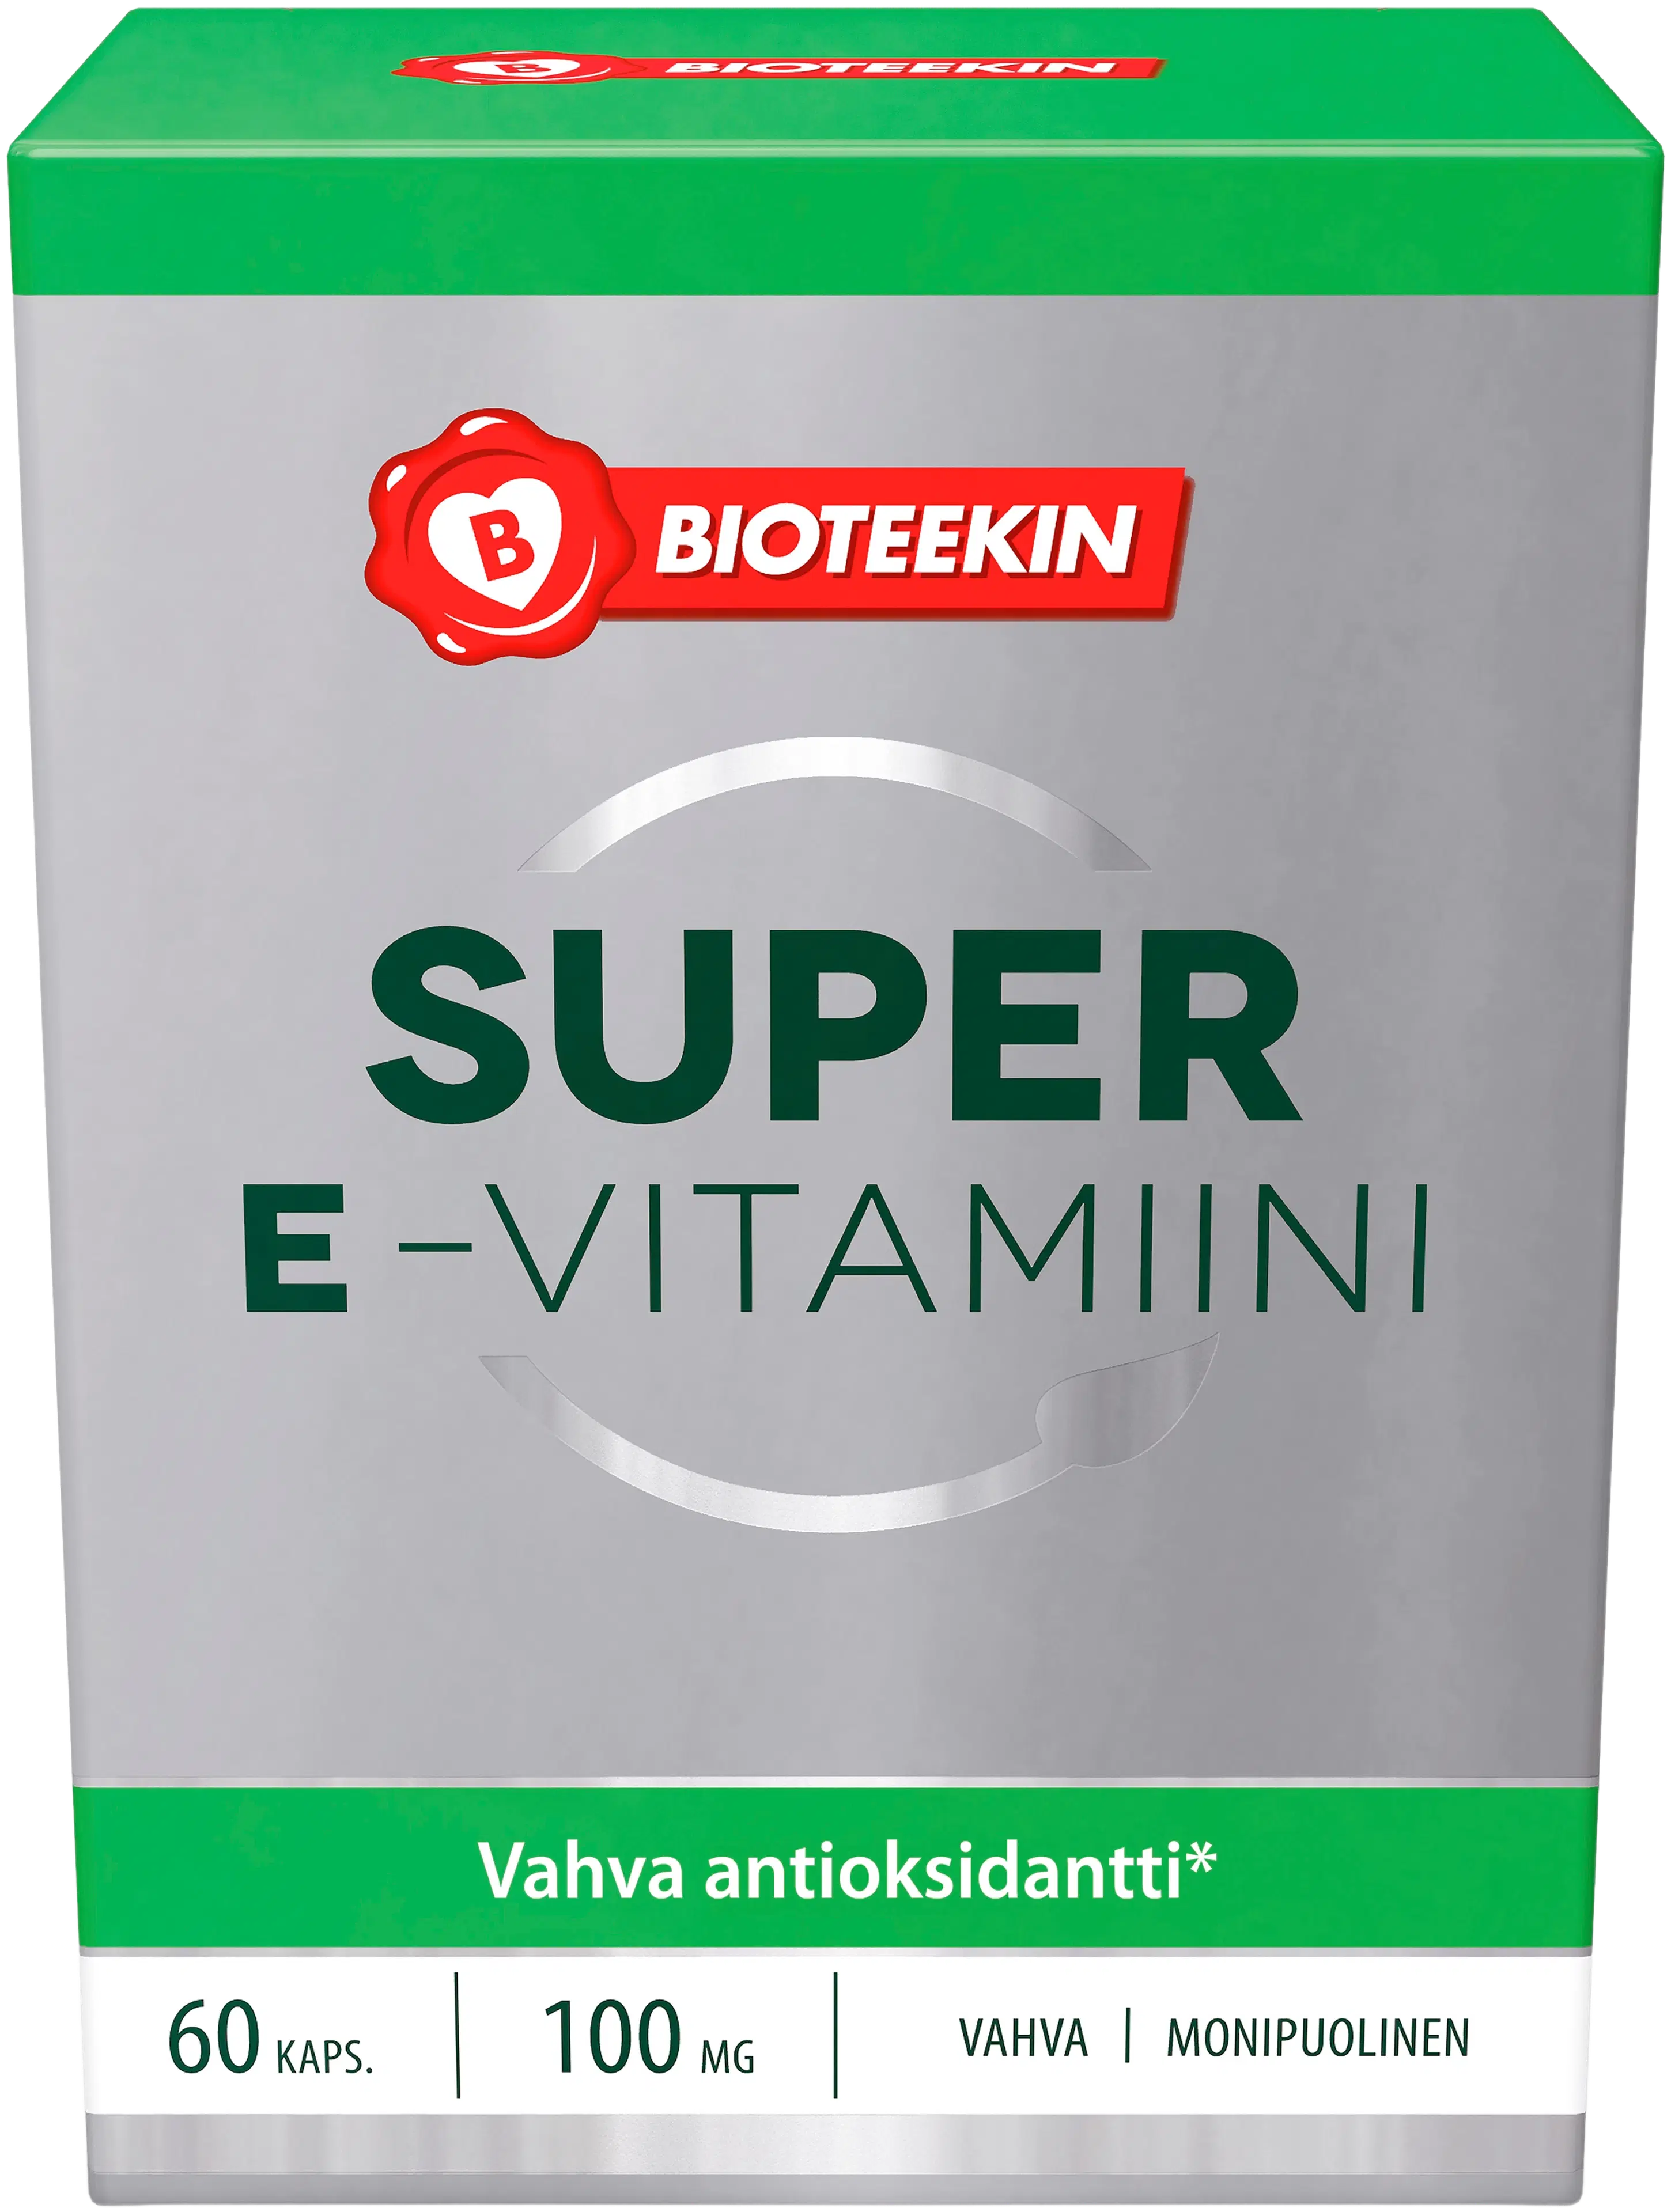 Bioteekki Super E-vitamiini ravintolisä 60 kaps.